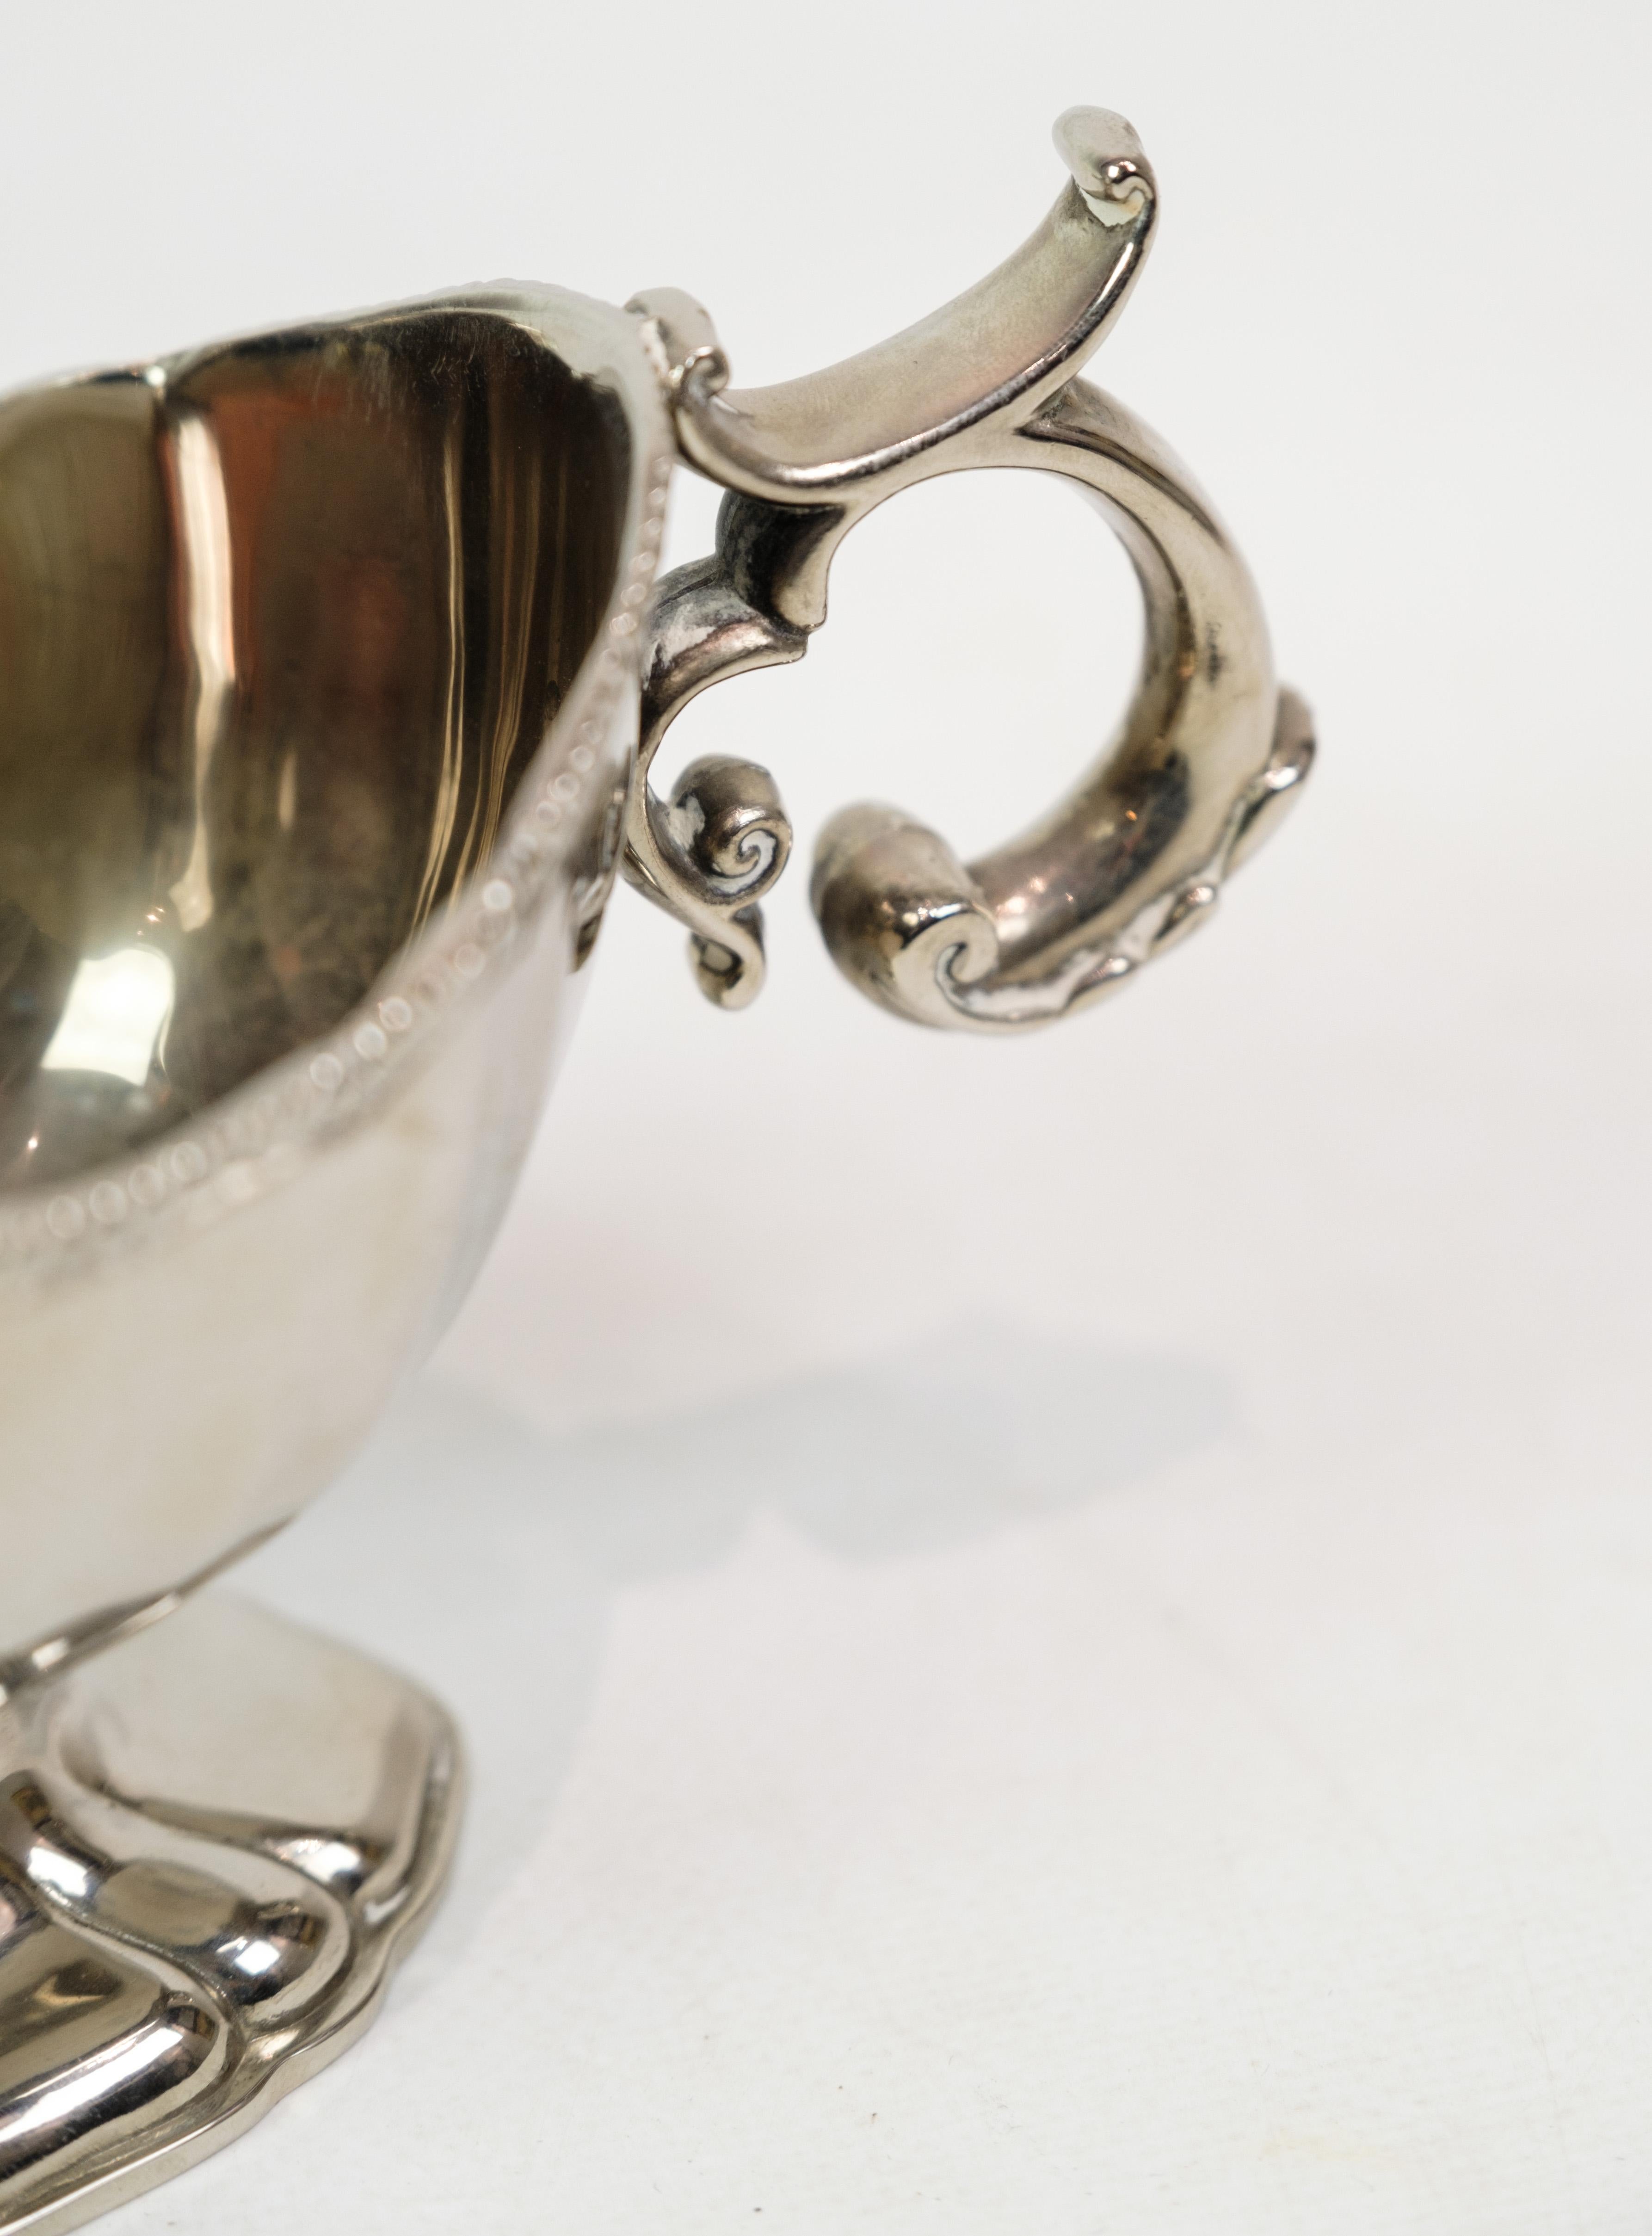 Soßentopf in Silberbeize mit schönem Perlenrand aus den 1930er Jahren.
H:12 B:20 T:9.5